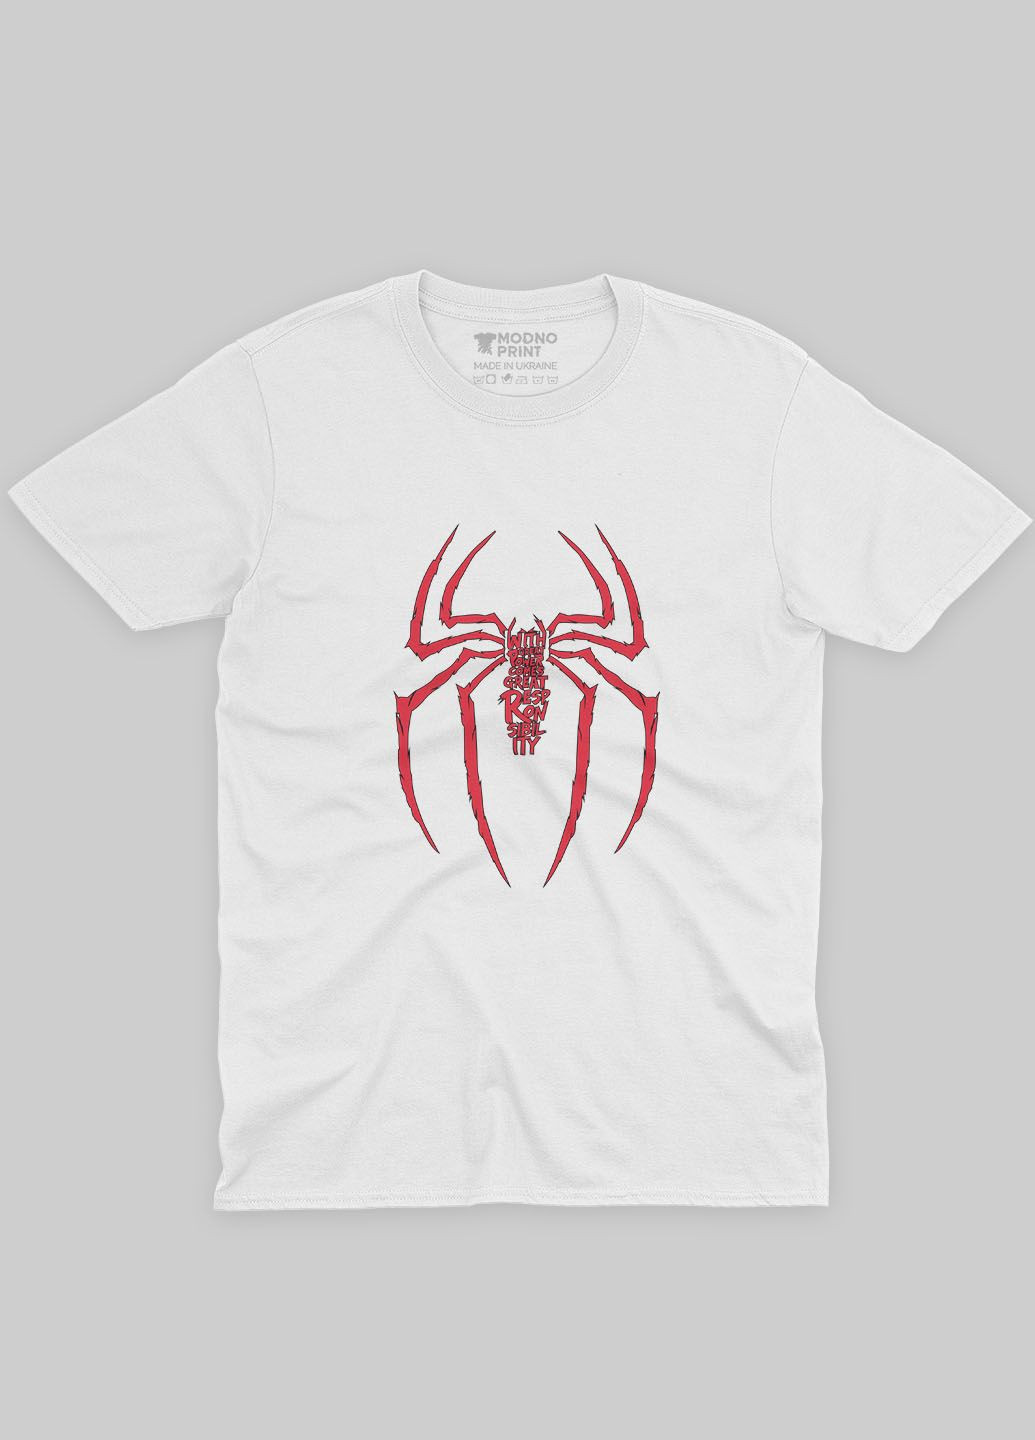 Біла демісезонна футболка для хлопчика з принтом супергероя - людина-павук (ts001-1-whi-006-014-046-b) Modno